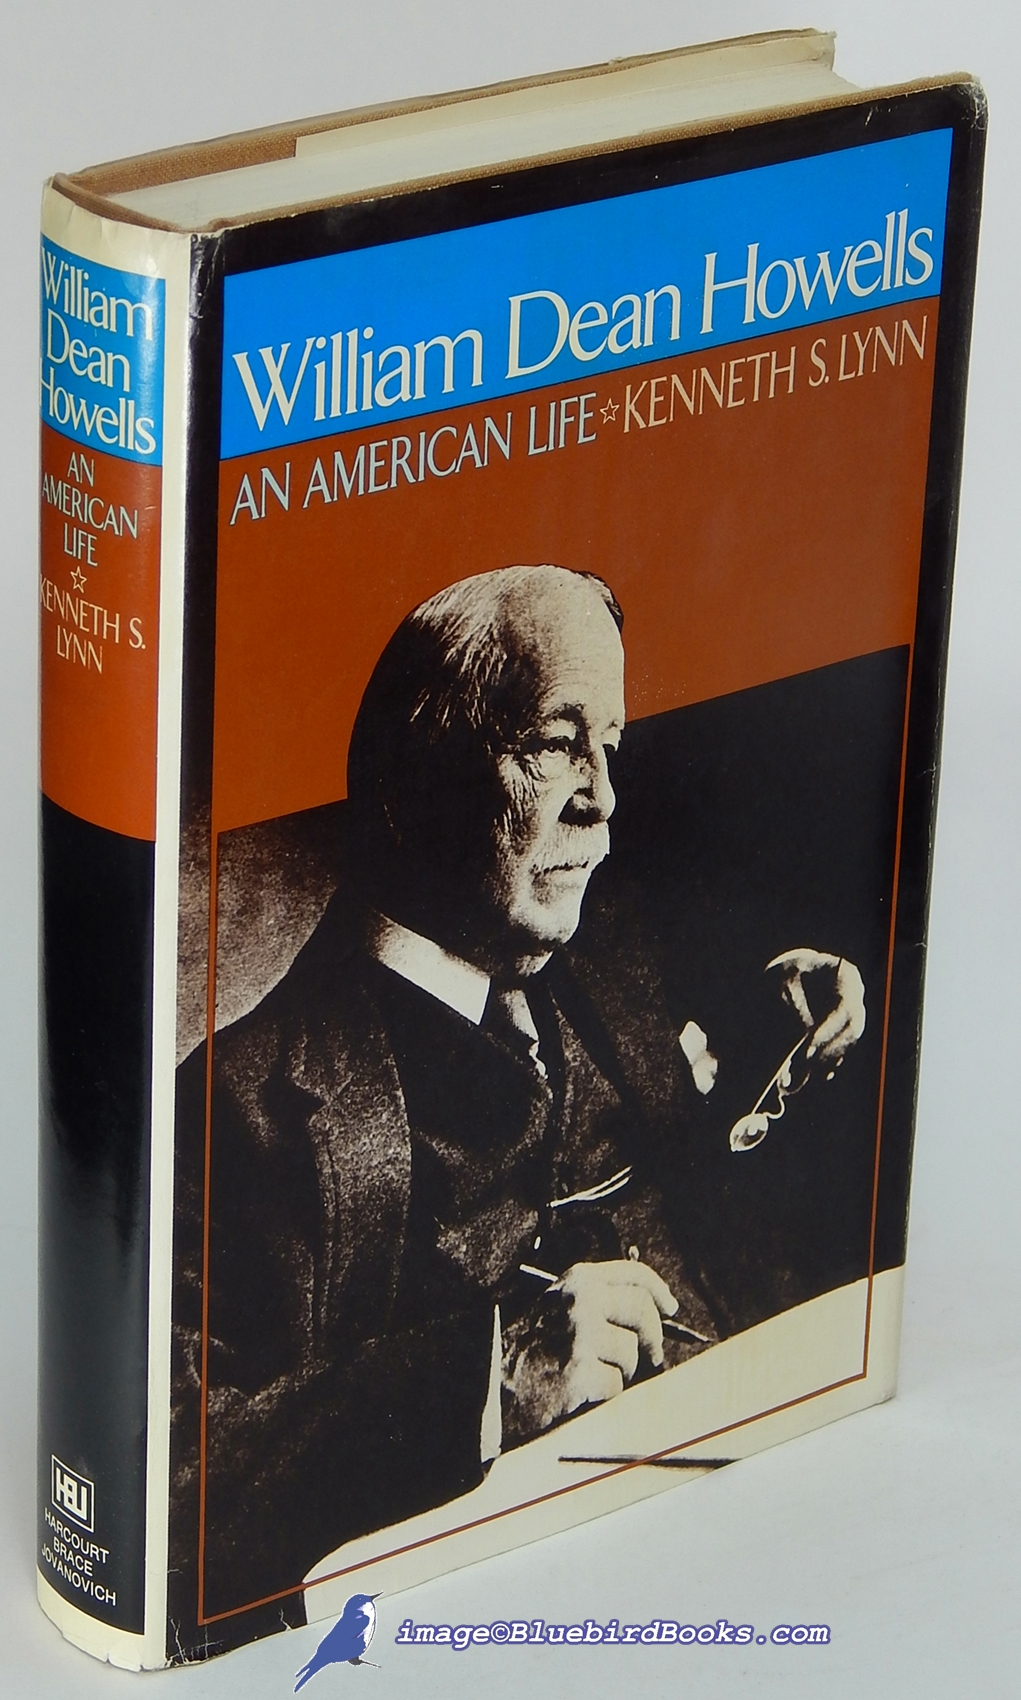 LYNN, KENNETH S. - William Dean Howells: An American Life